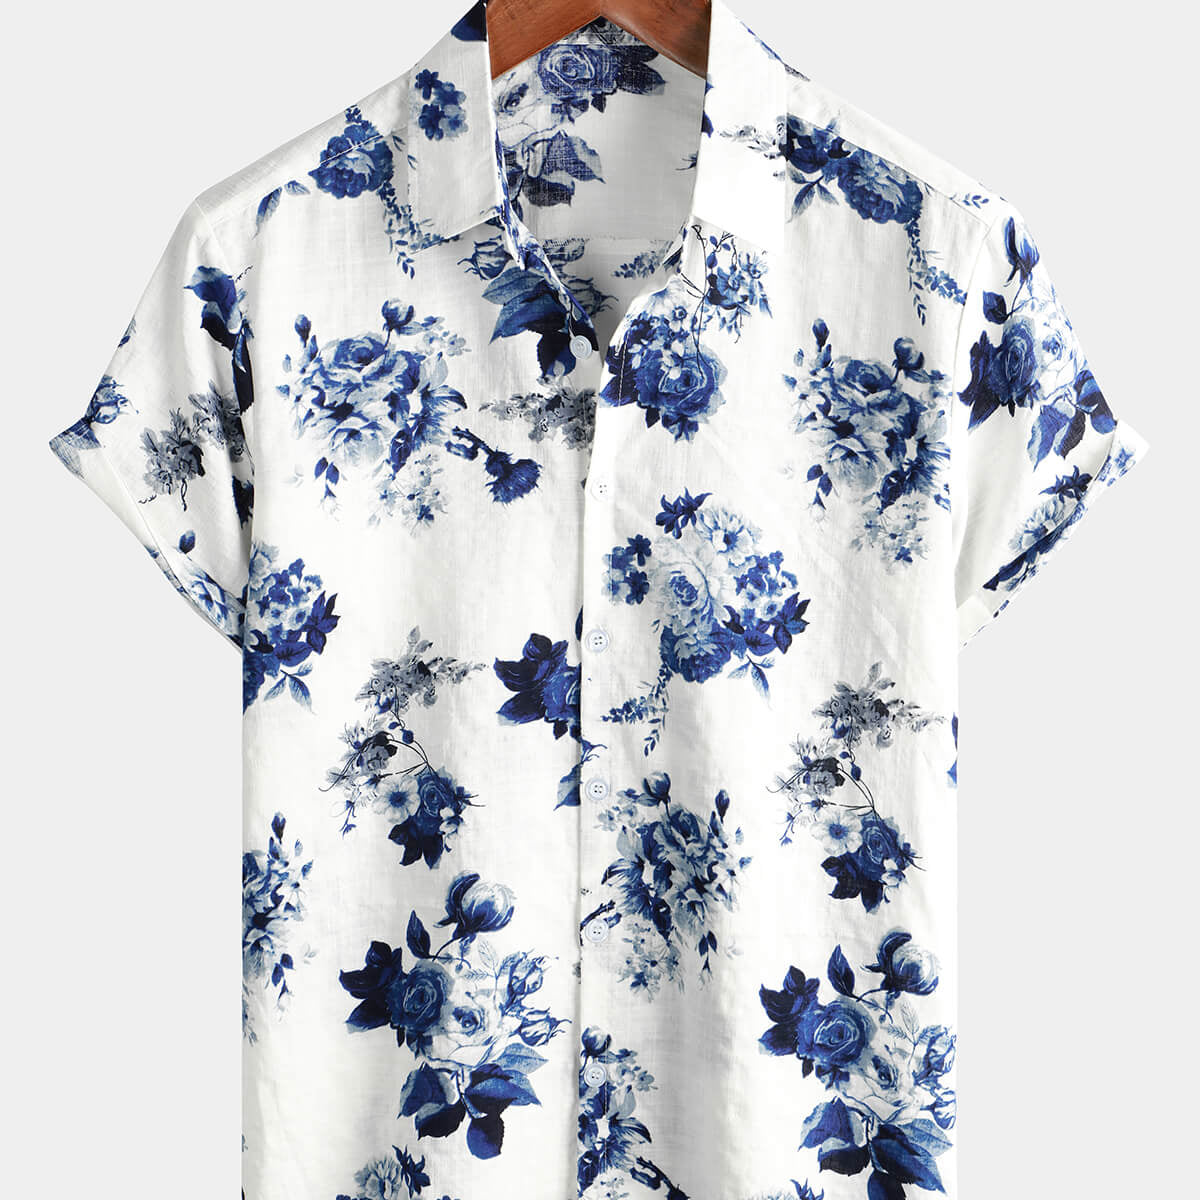 Camisa hawaiana de solapa blanca de manga corta con botones para vacaciones en la playa de algodón con estampado floral azul para hombre